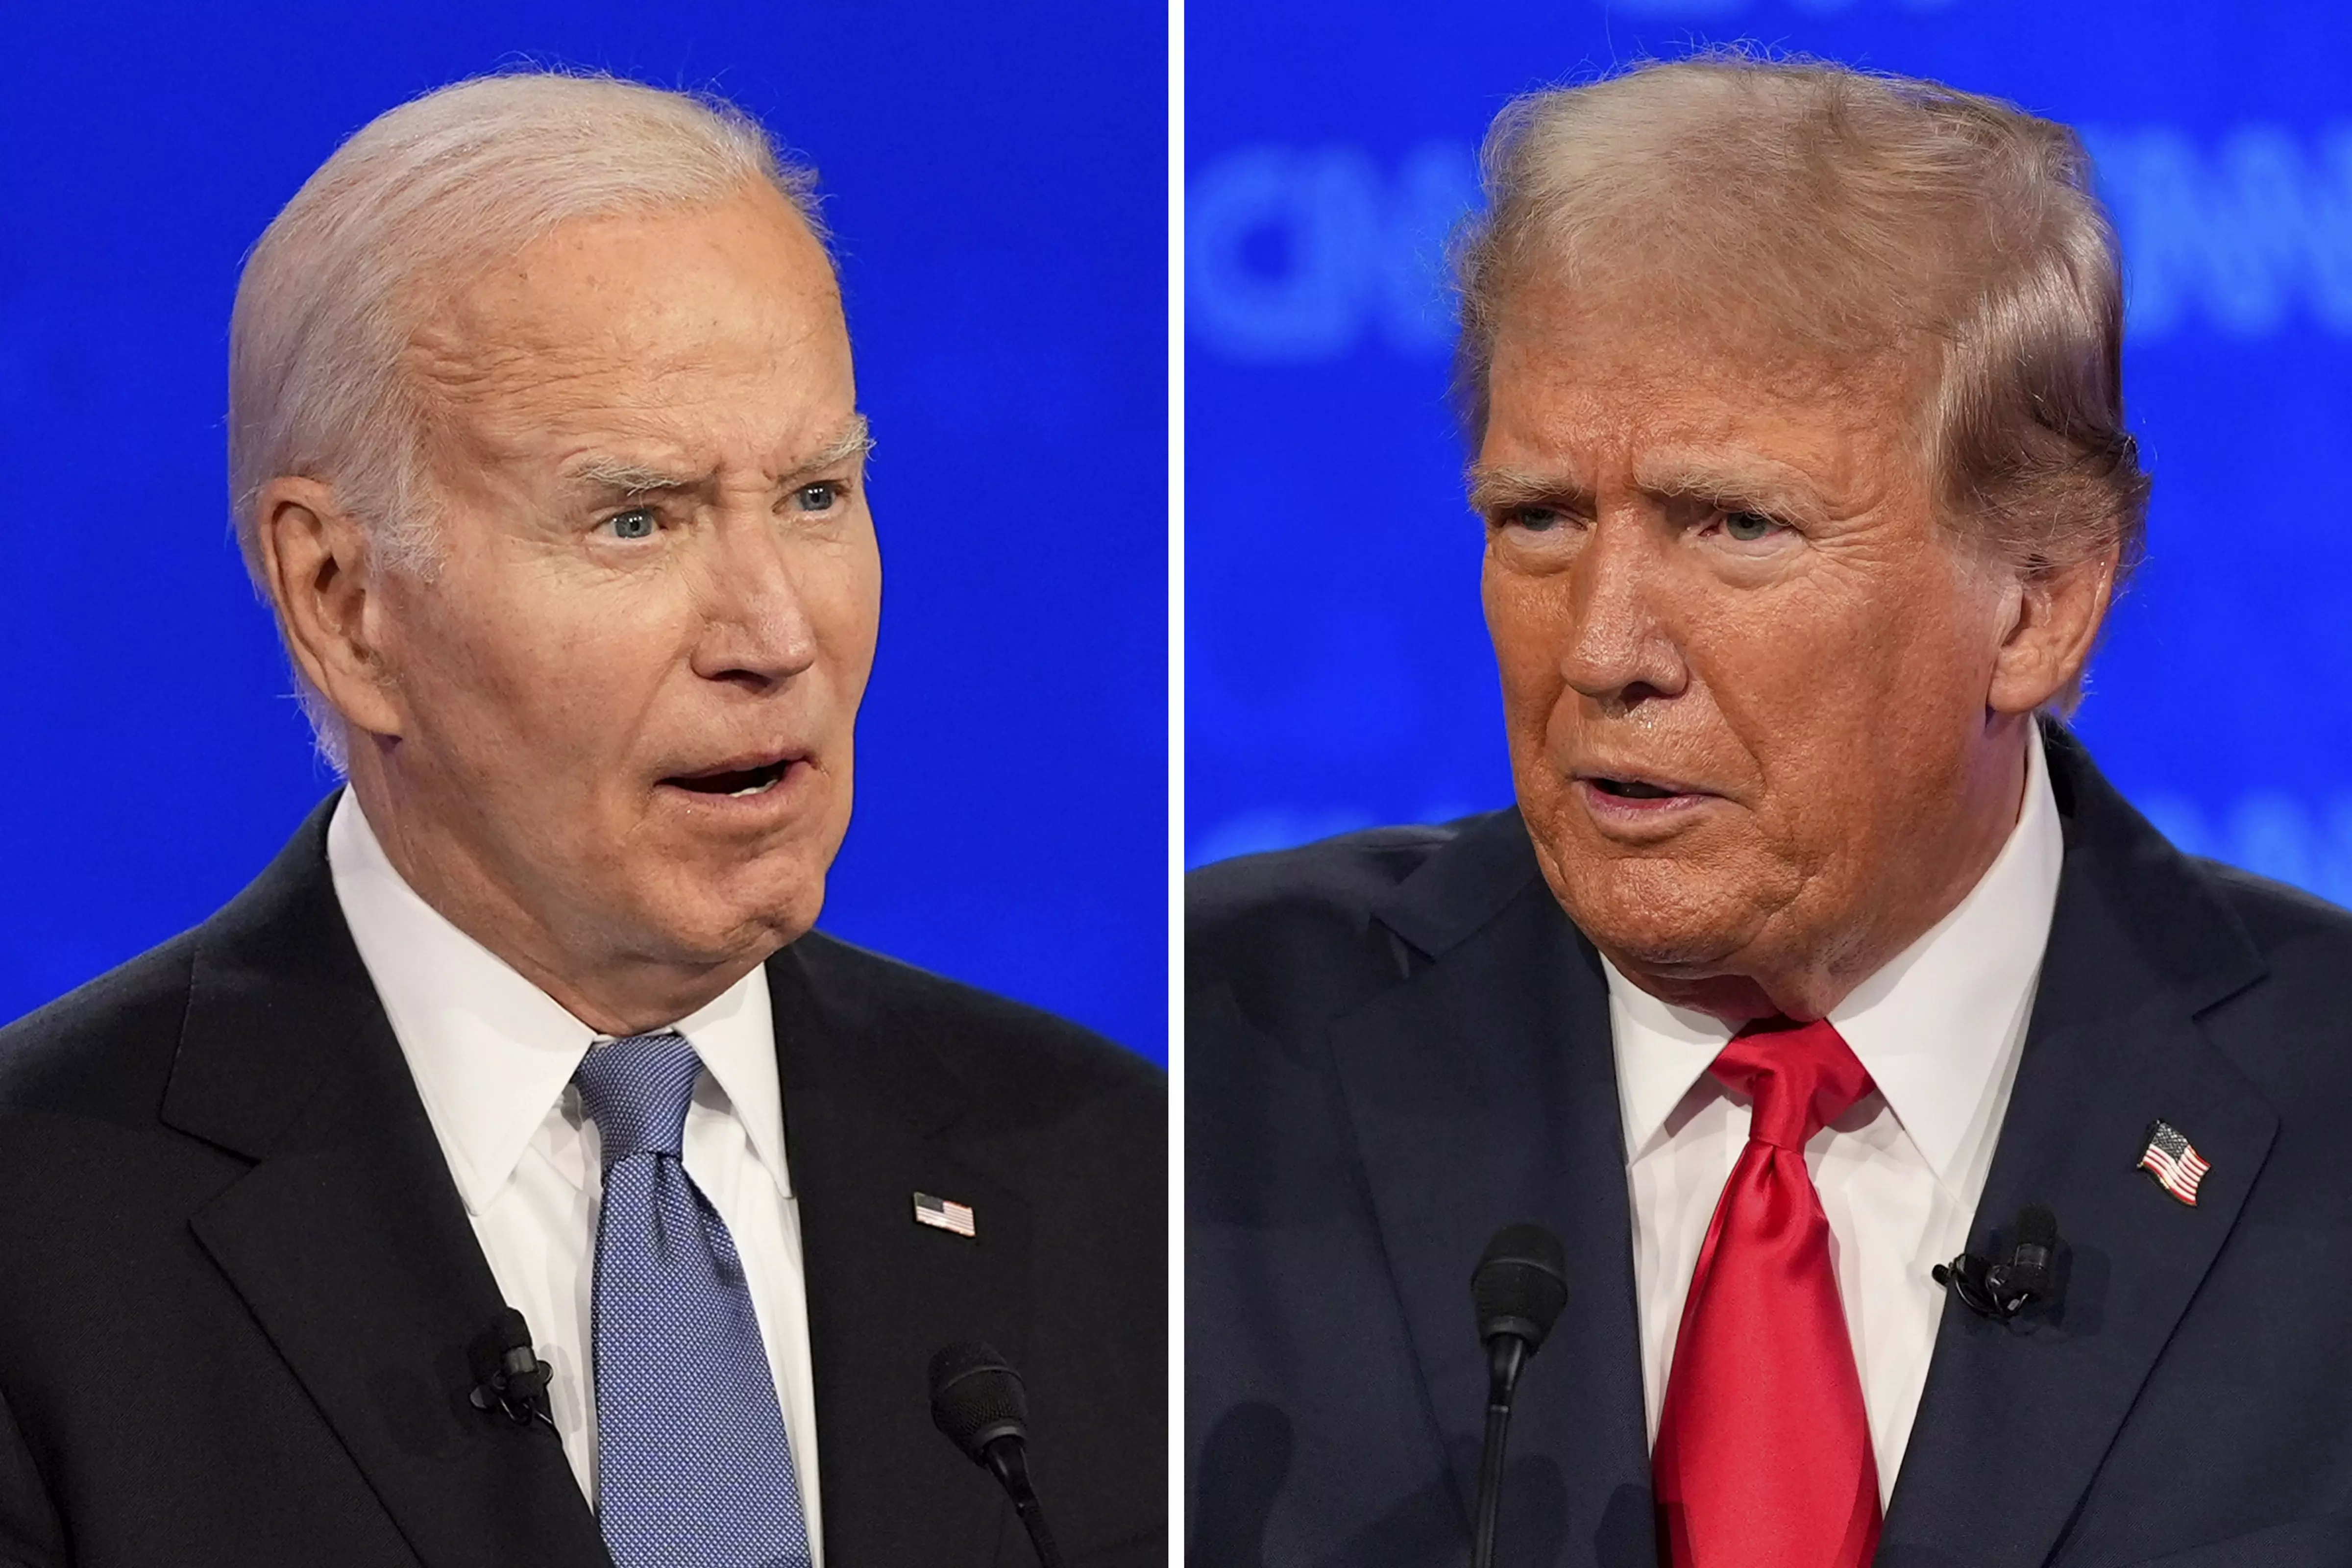 Stumbling Biden, combative Trump: Key takeaways from US presidential debate